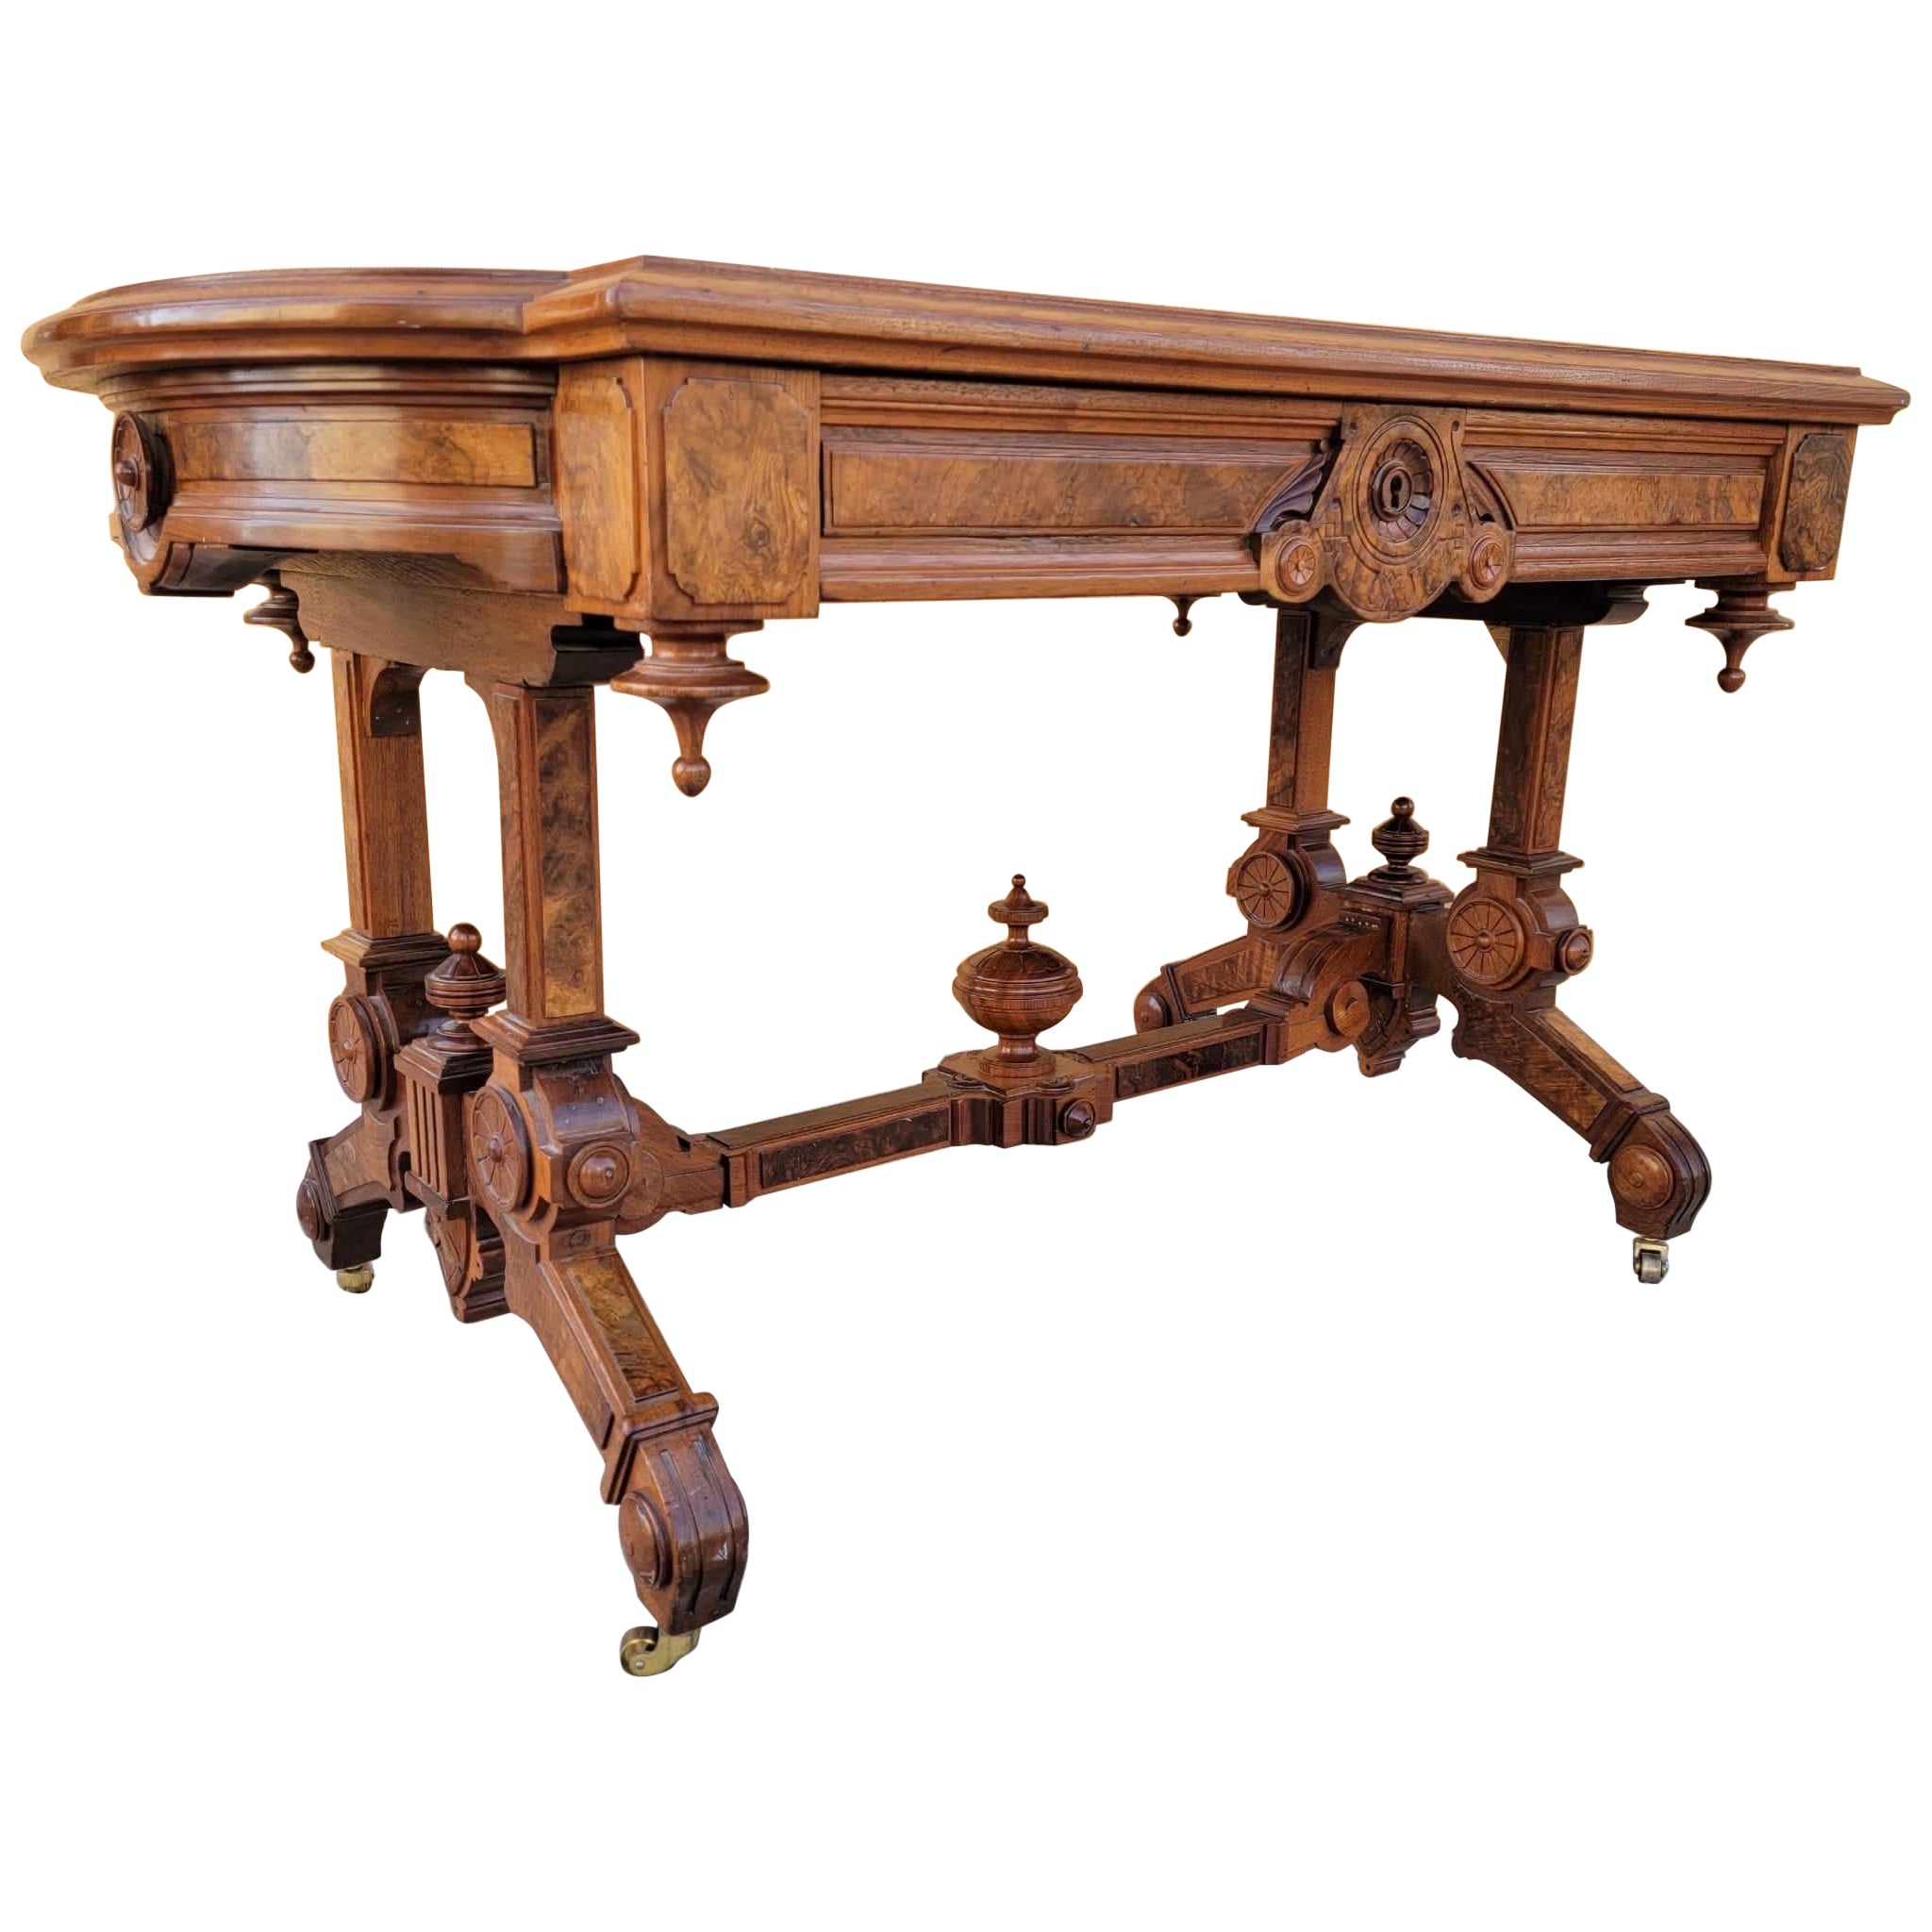 Antique Ornate Carved Eastlake Leather Top Writing Desk